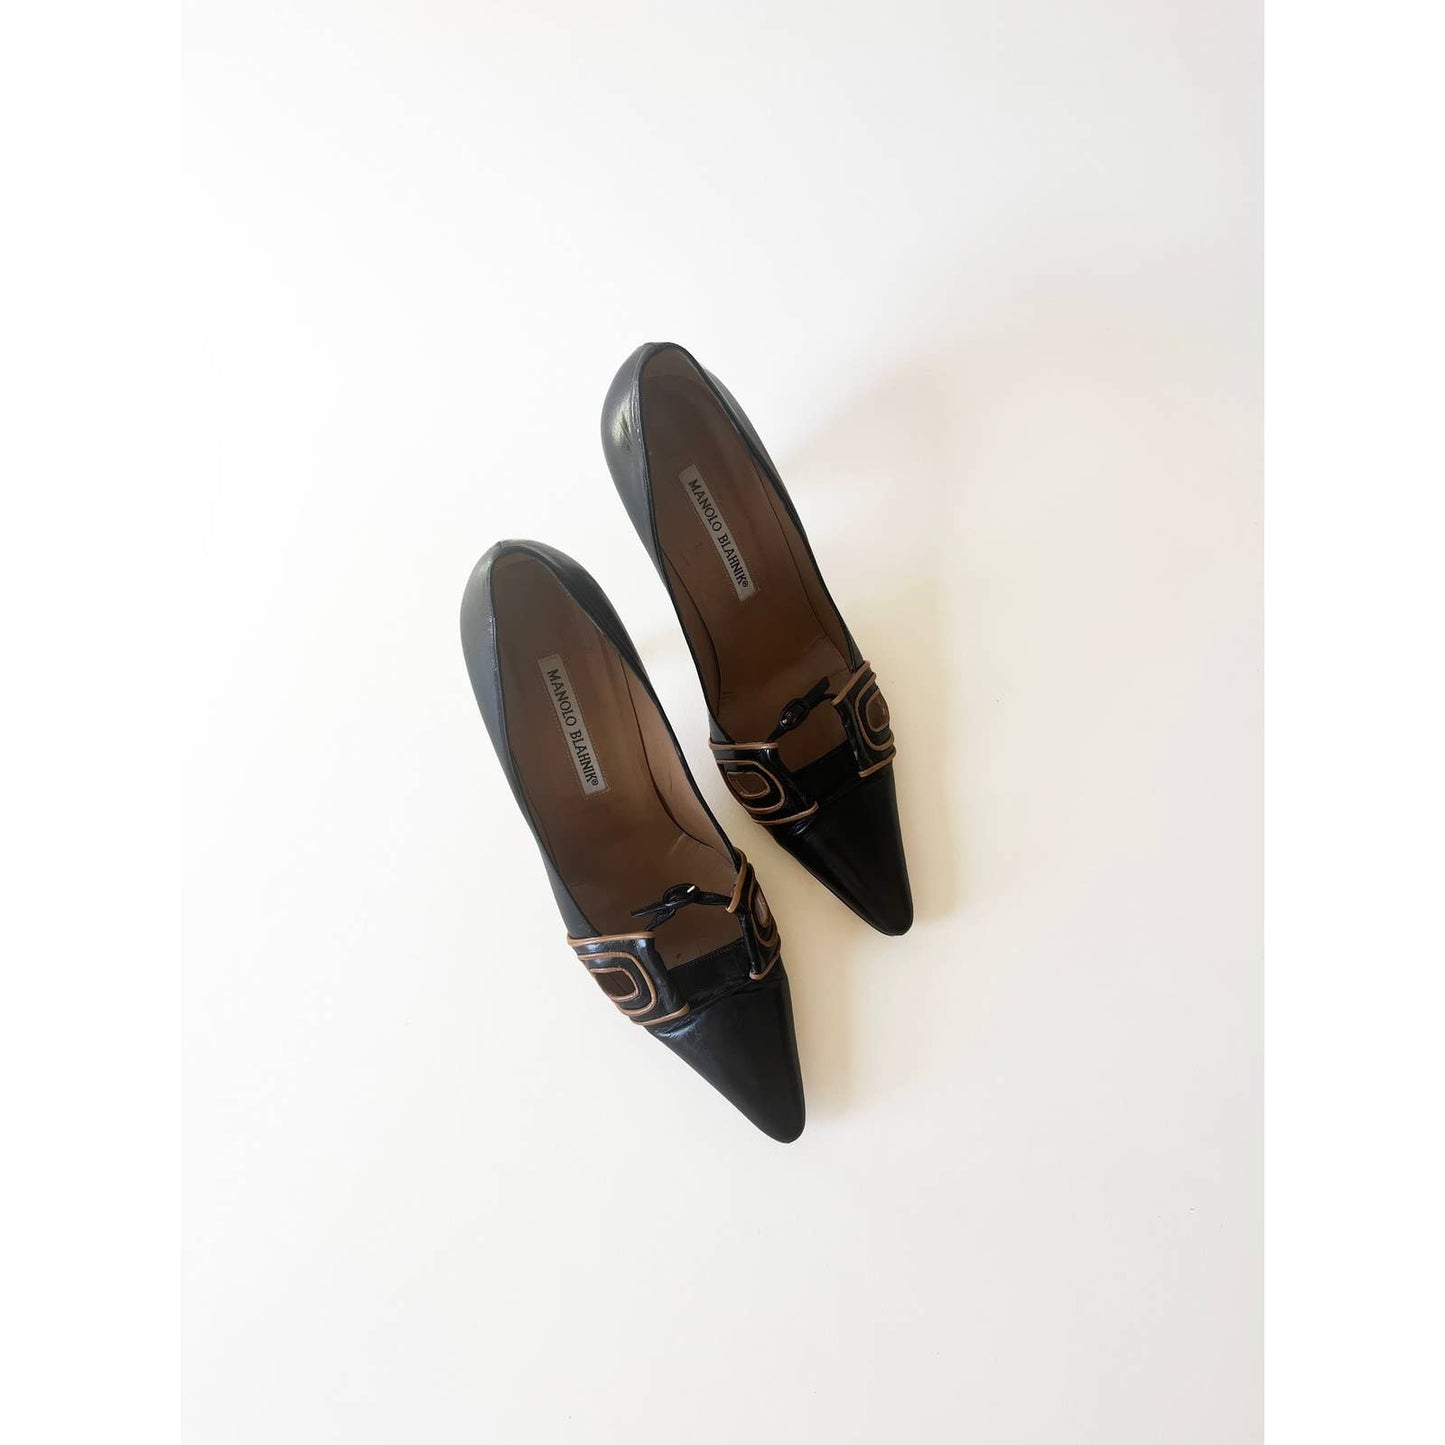 Vintage Manolo Blahnik Heels with Buckle Detail | Size 7 US